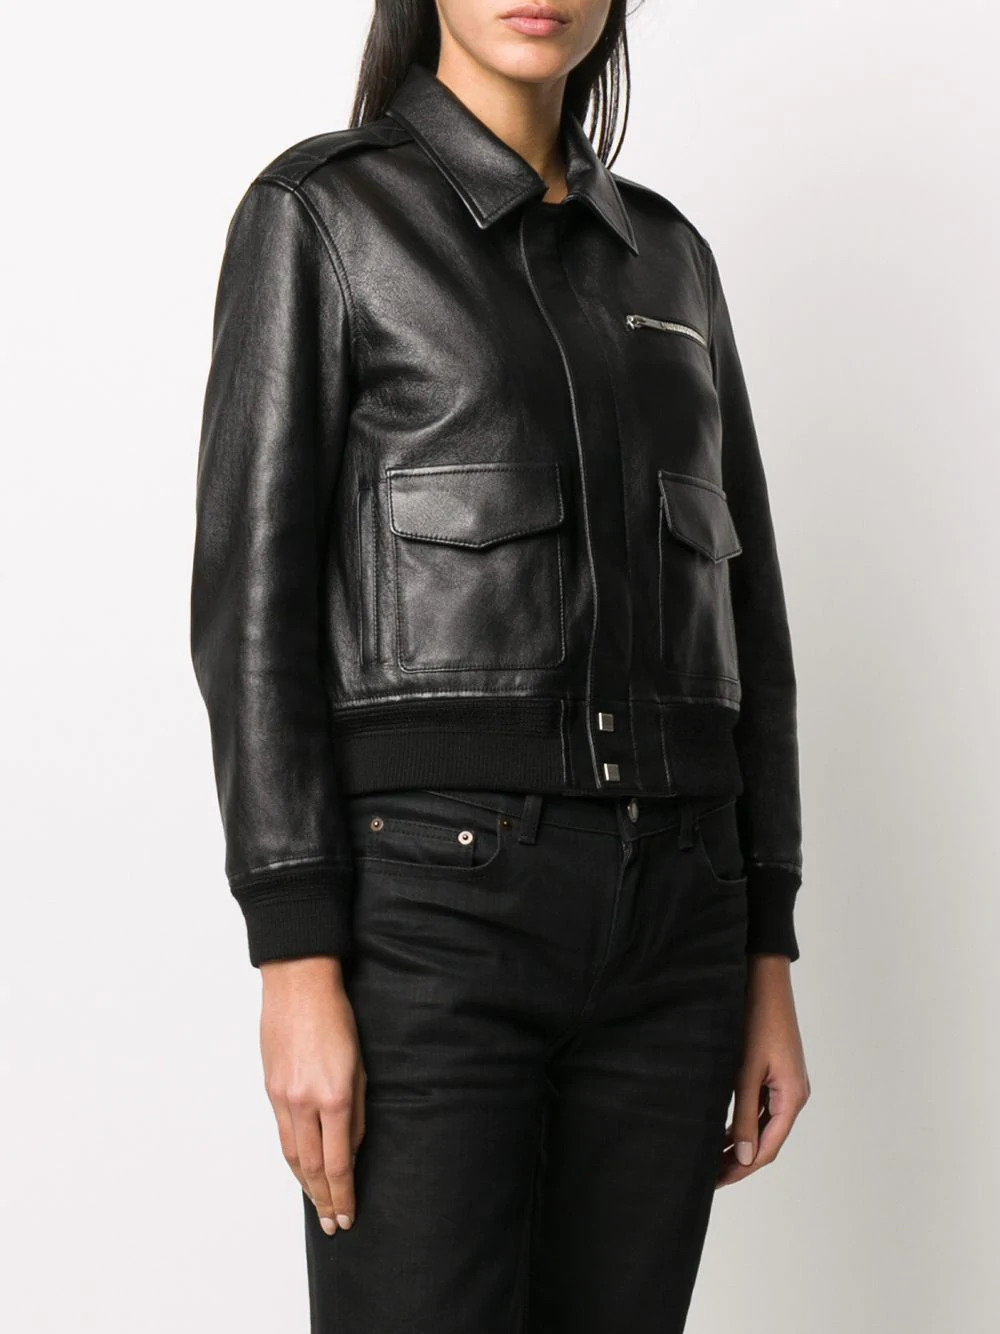 Black Leather Cropped Jacket - Maker of Jacket